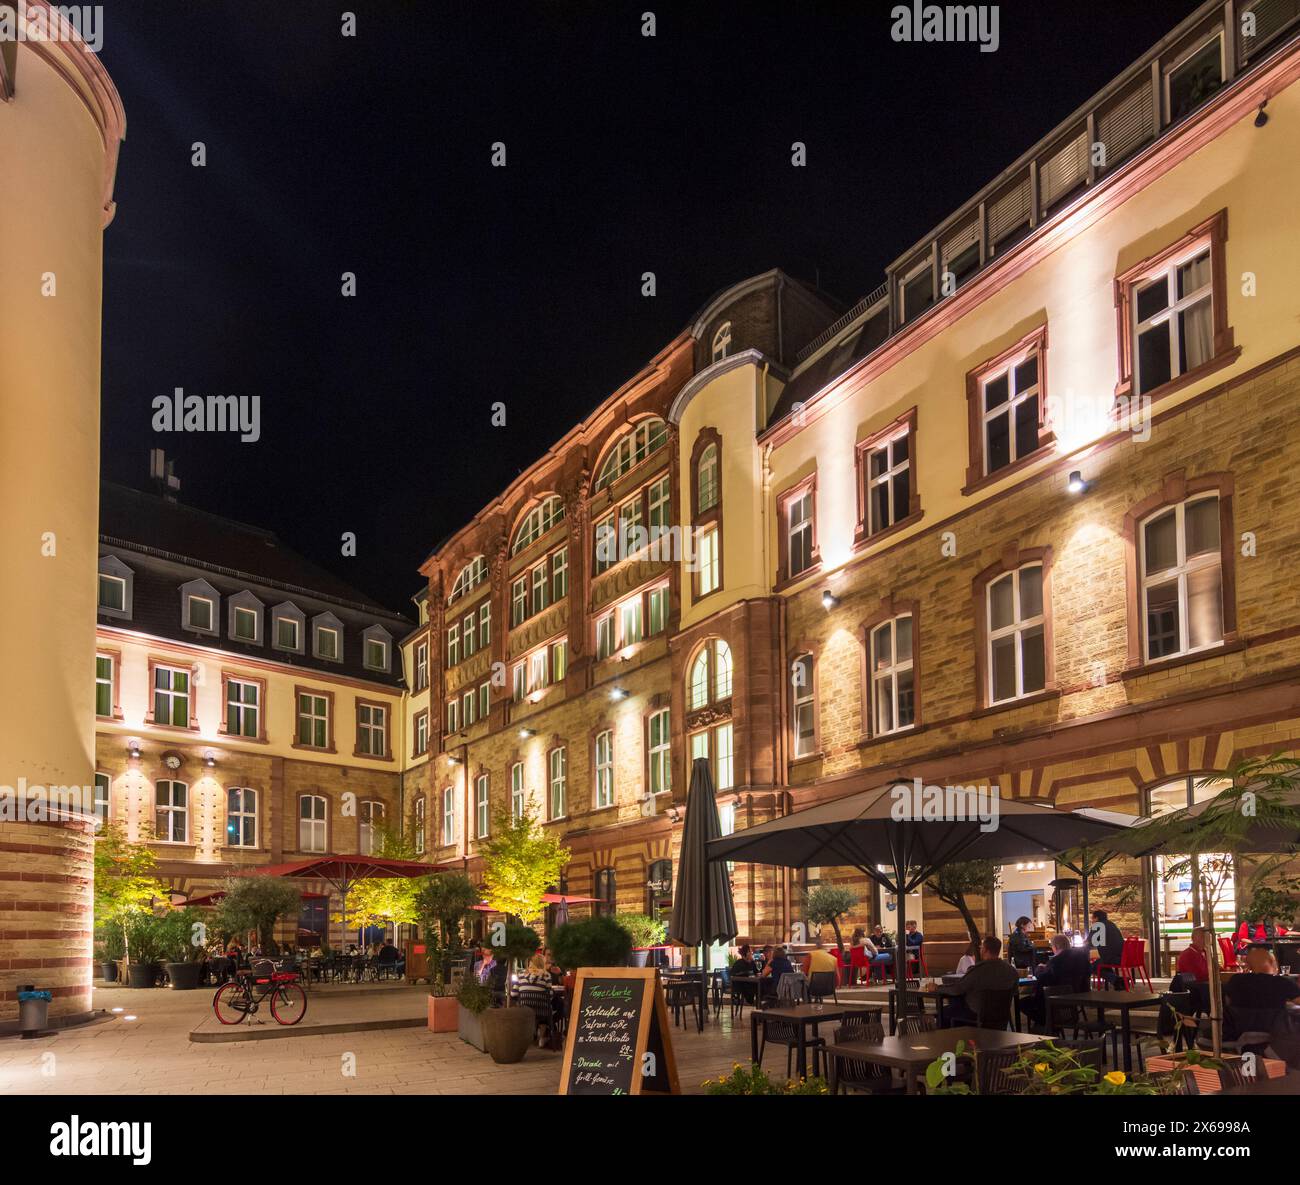 Trèves, maison Posthof, restaurant en plein air, région de Moselle, Rhénanie-Palatinat, Allemagne Banque D'Images